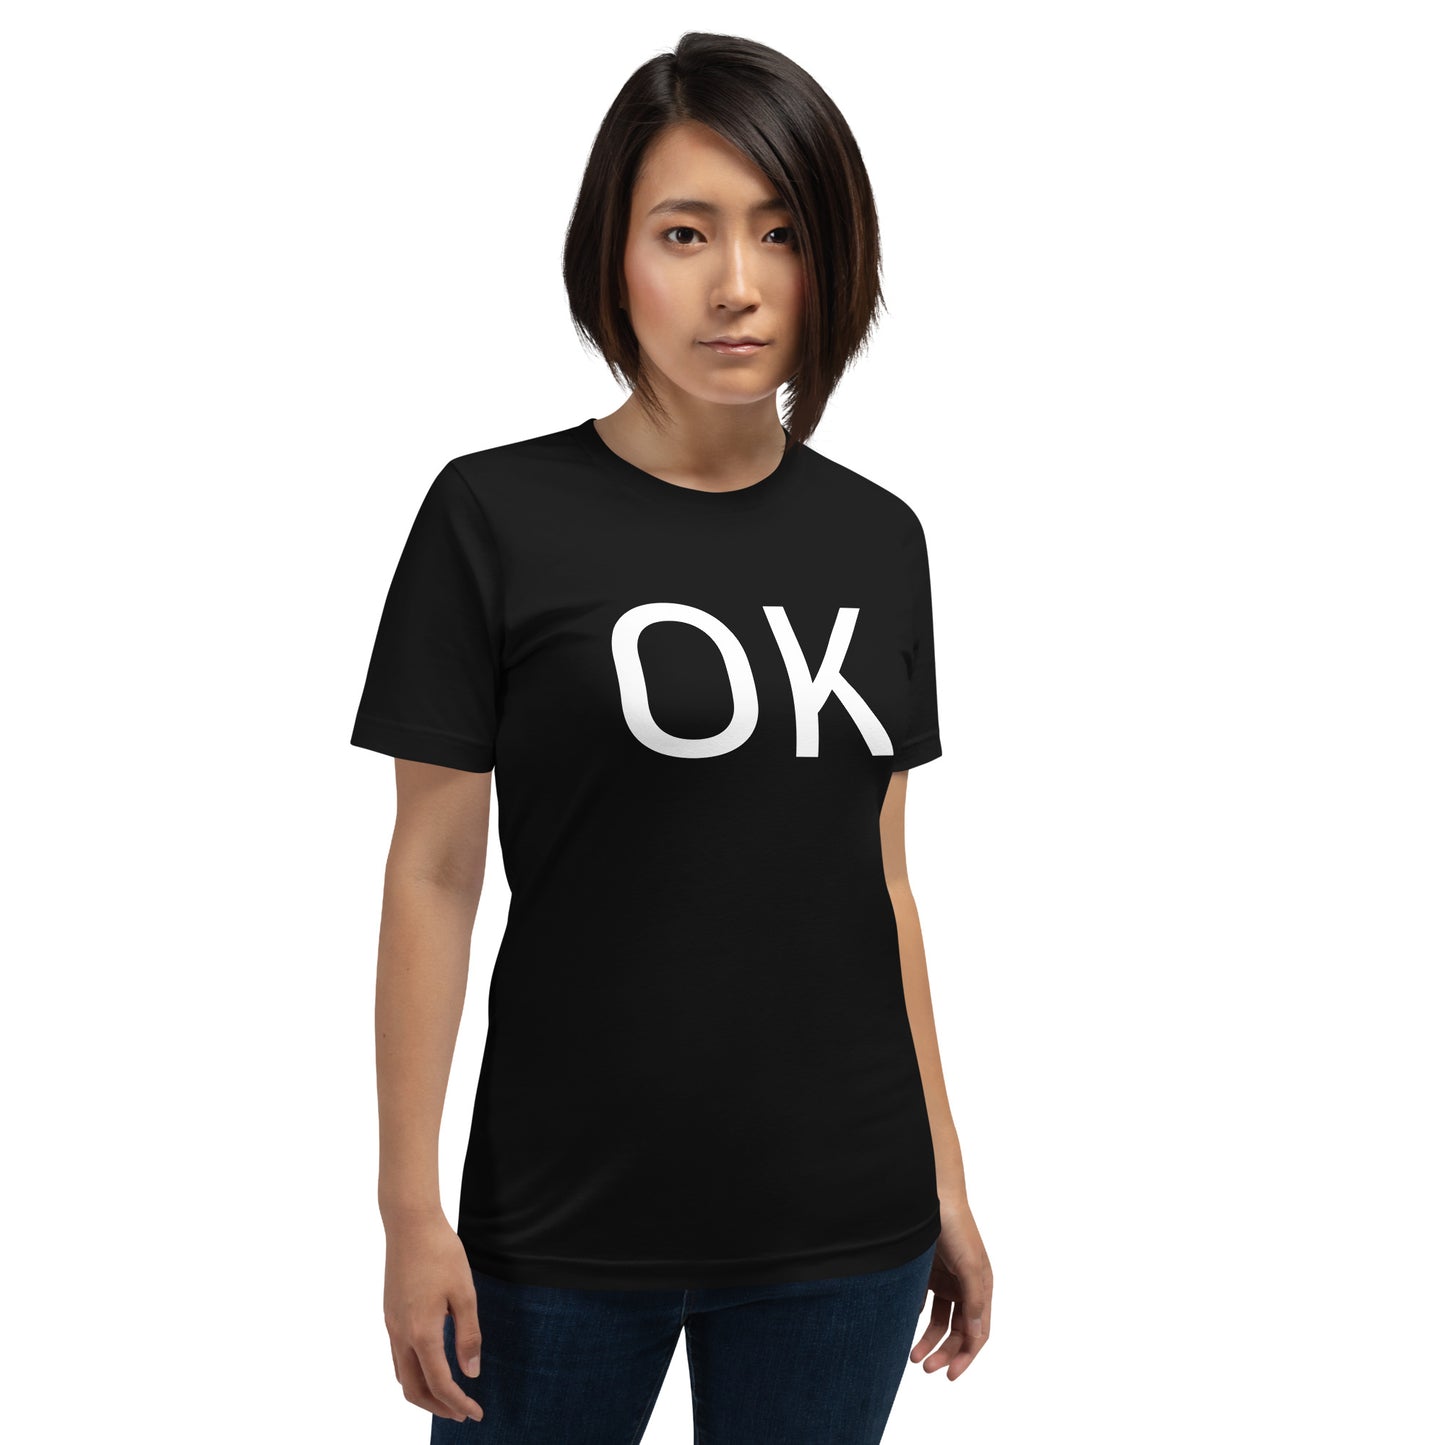 OK Unisex T-shirt